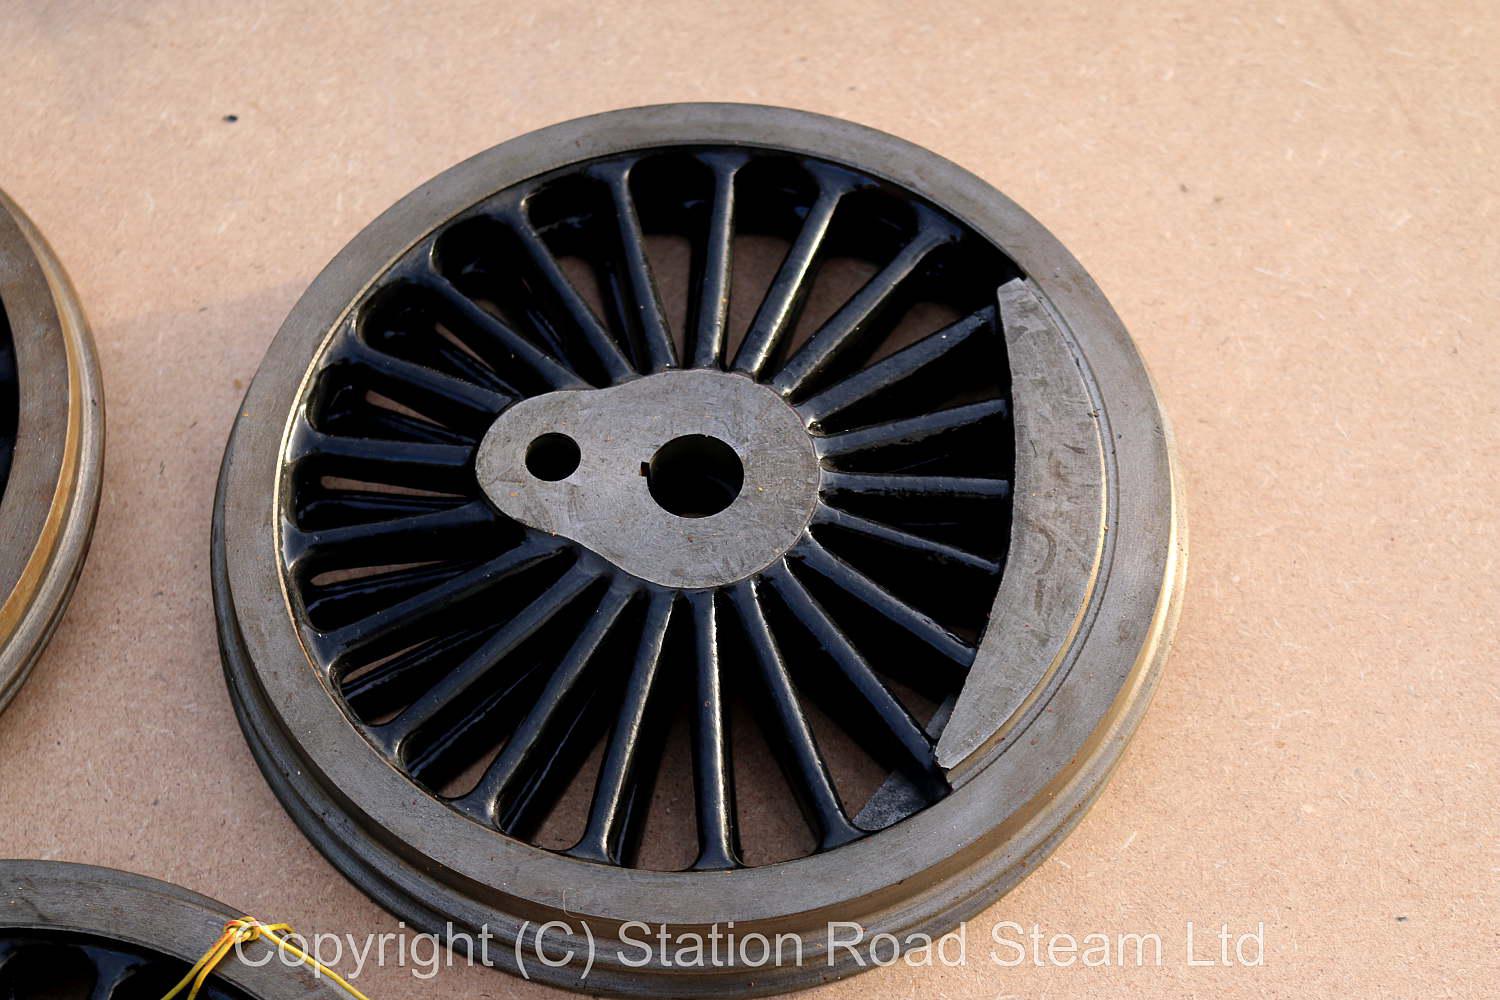 Boiler, patterns & castings for 5 inch gauge LMS 